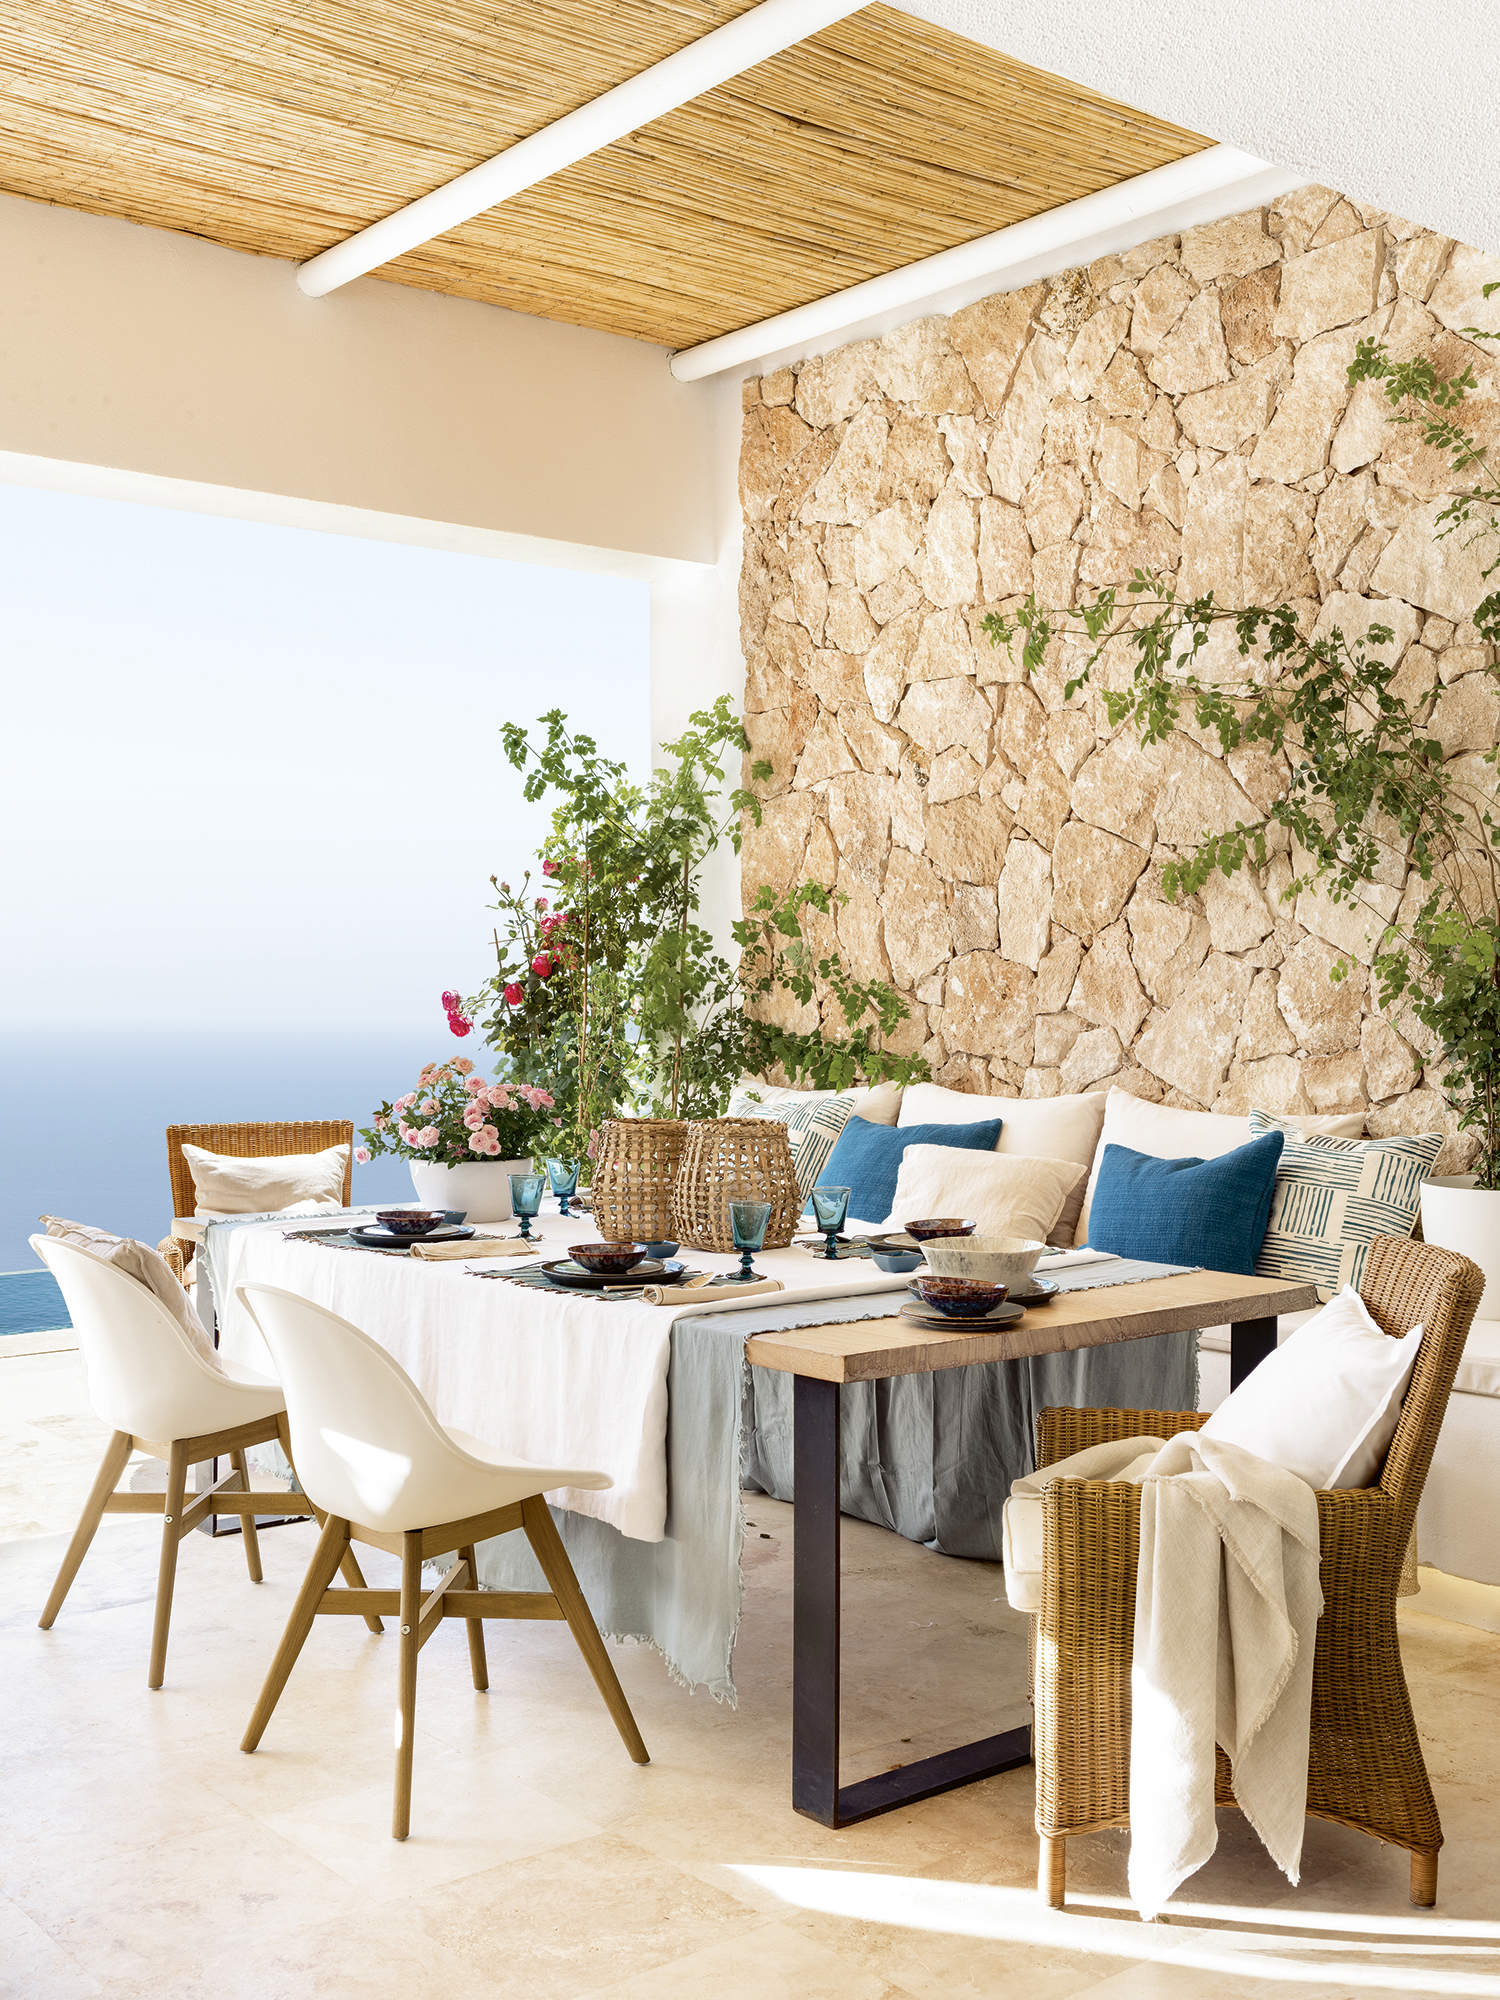 Comedor exterior de estilo mediterráneo con porche y pared de piedra caliza